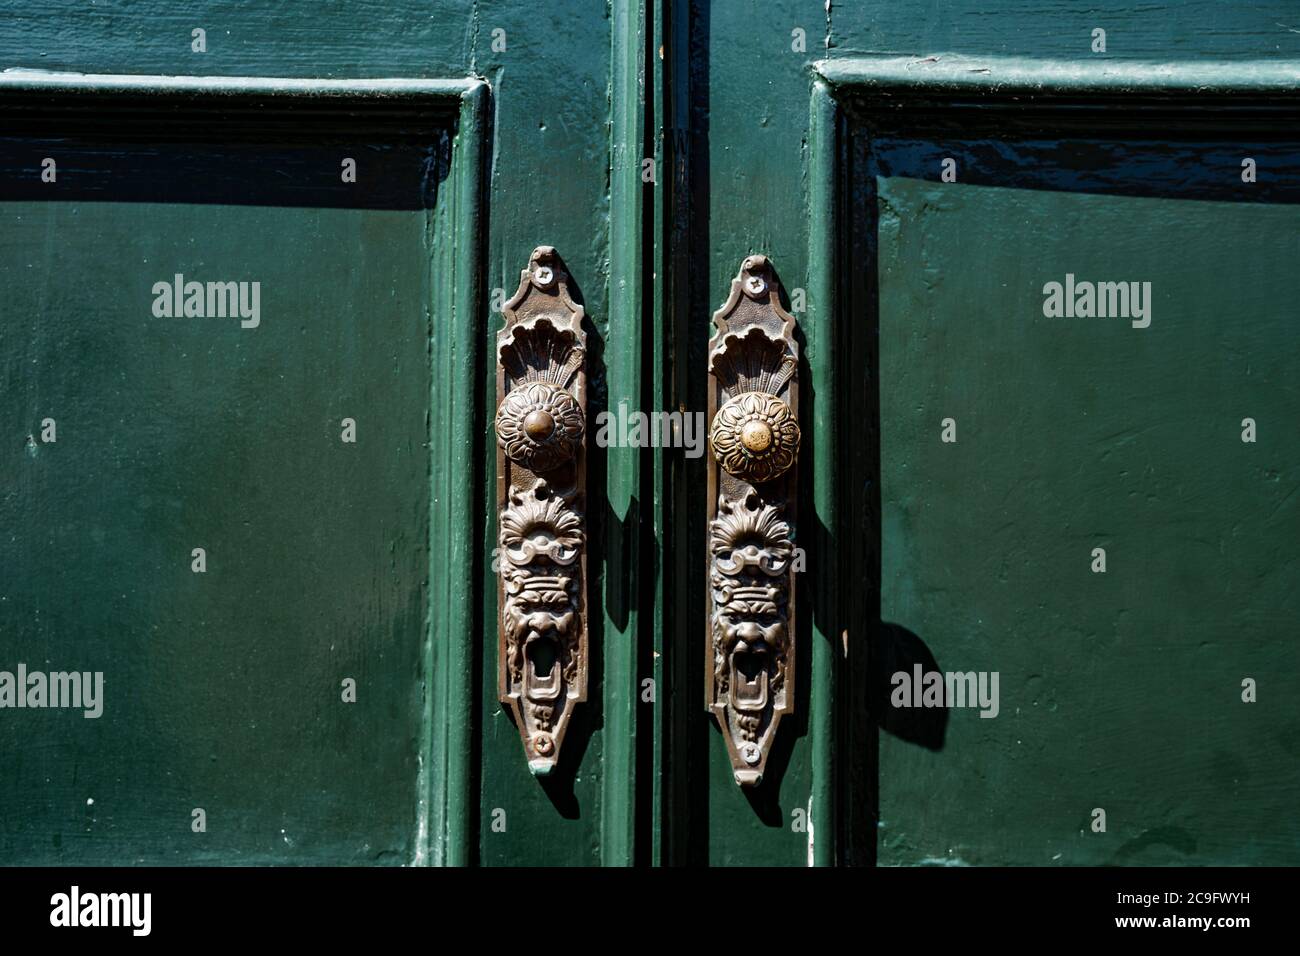 Patterned metal door handles on green double-leaf doors. Stock Photo